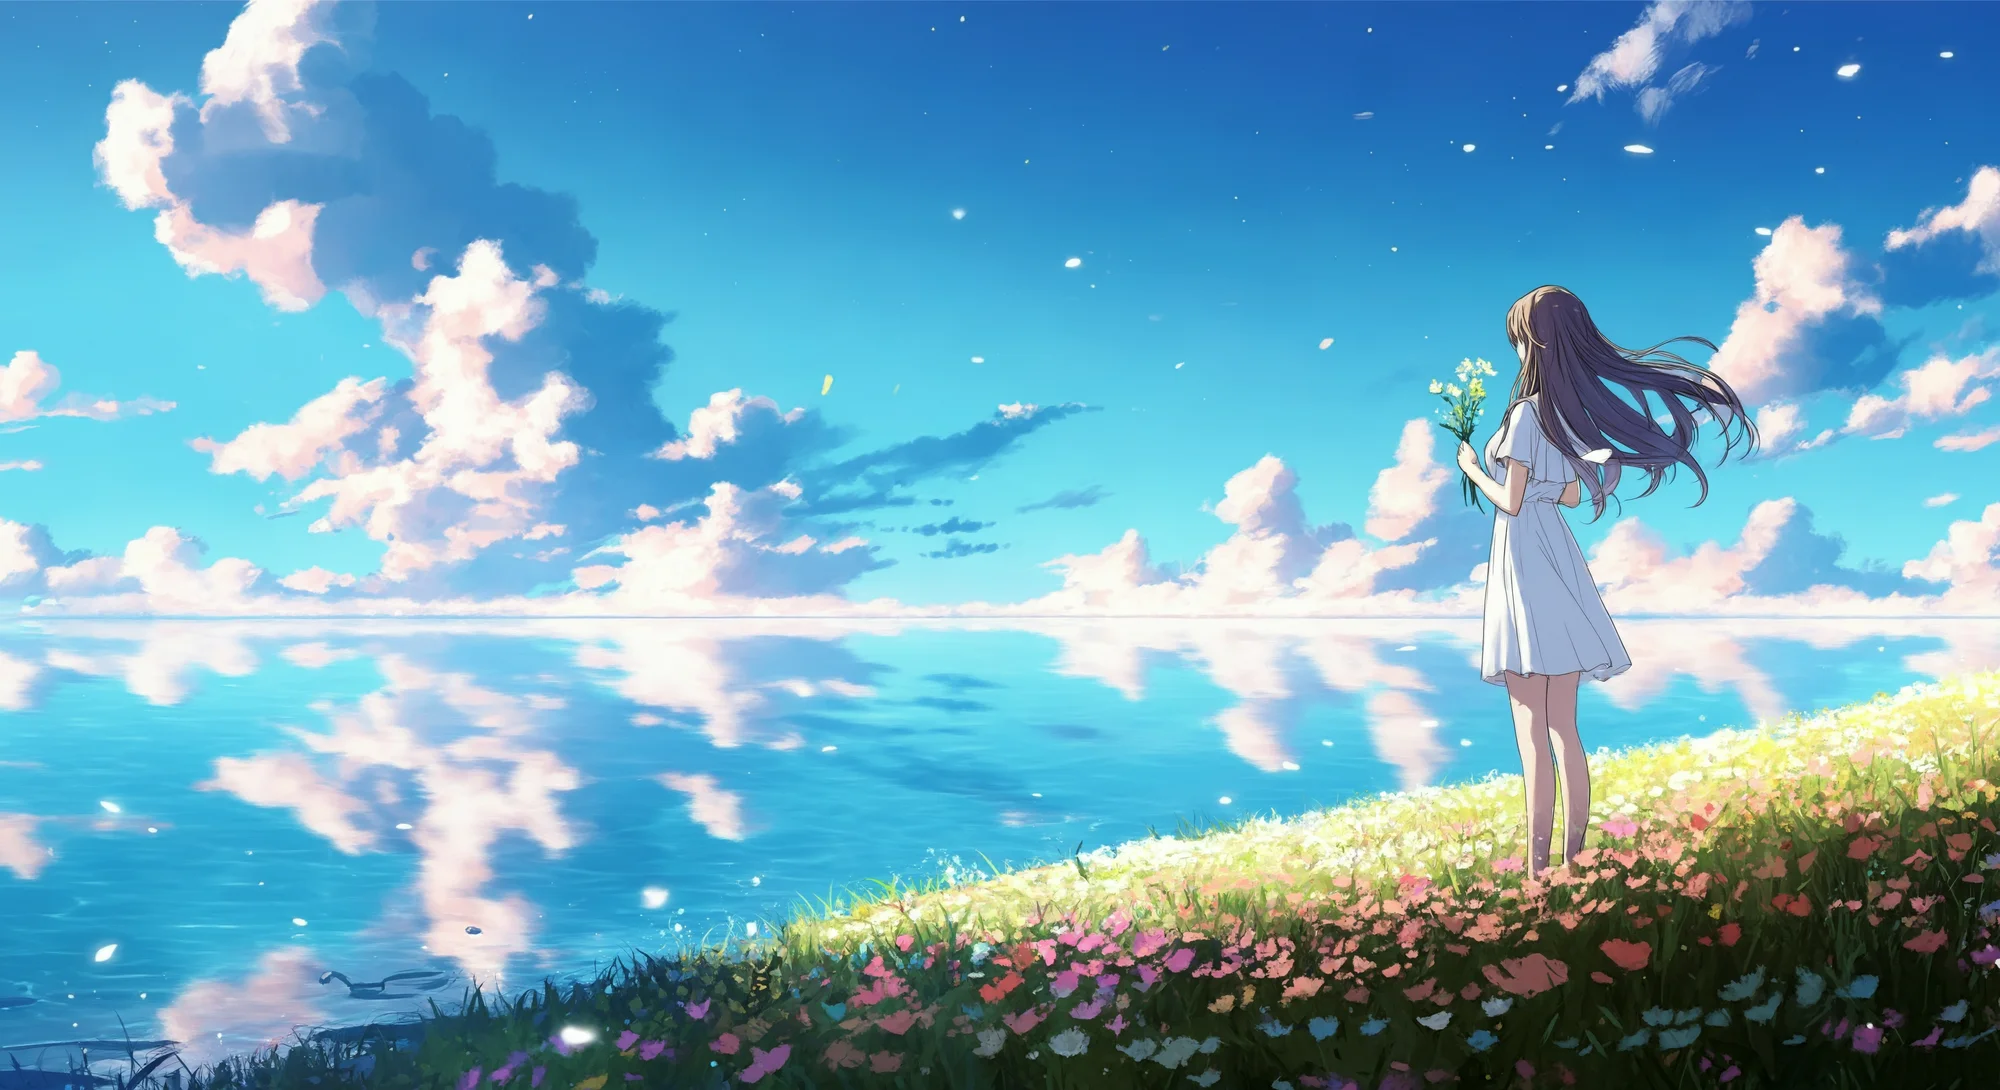 一幅动漫风格的图像，展示了一位穿着白色连衣裙的女孩站在一个广阔湖泊的岸边，手捧鲜花，仰望满是粉色云彩的天空。天空的倒影映在水面上。周围是野花覆盖的小山丘。